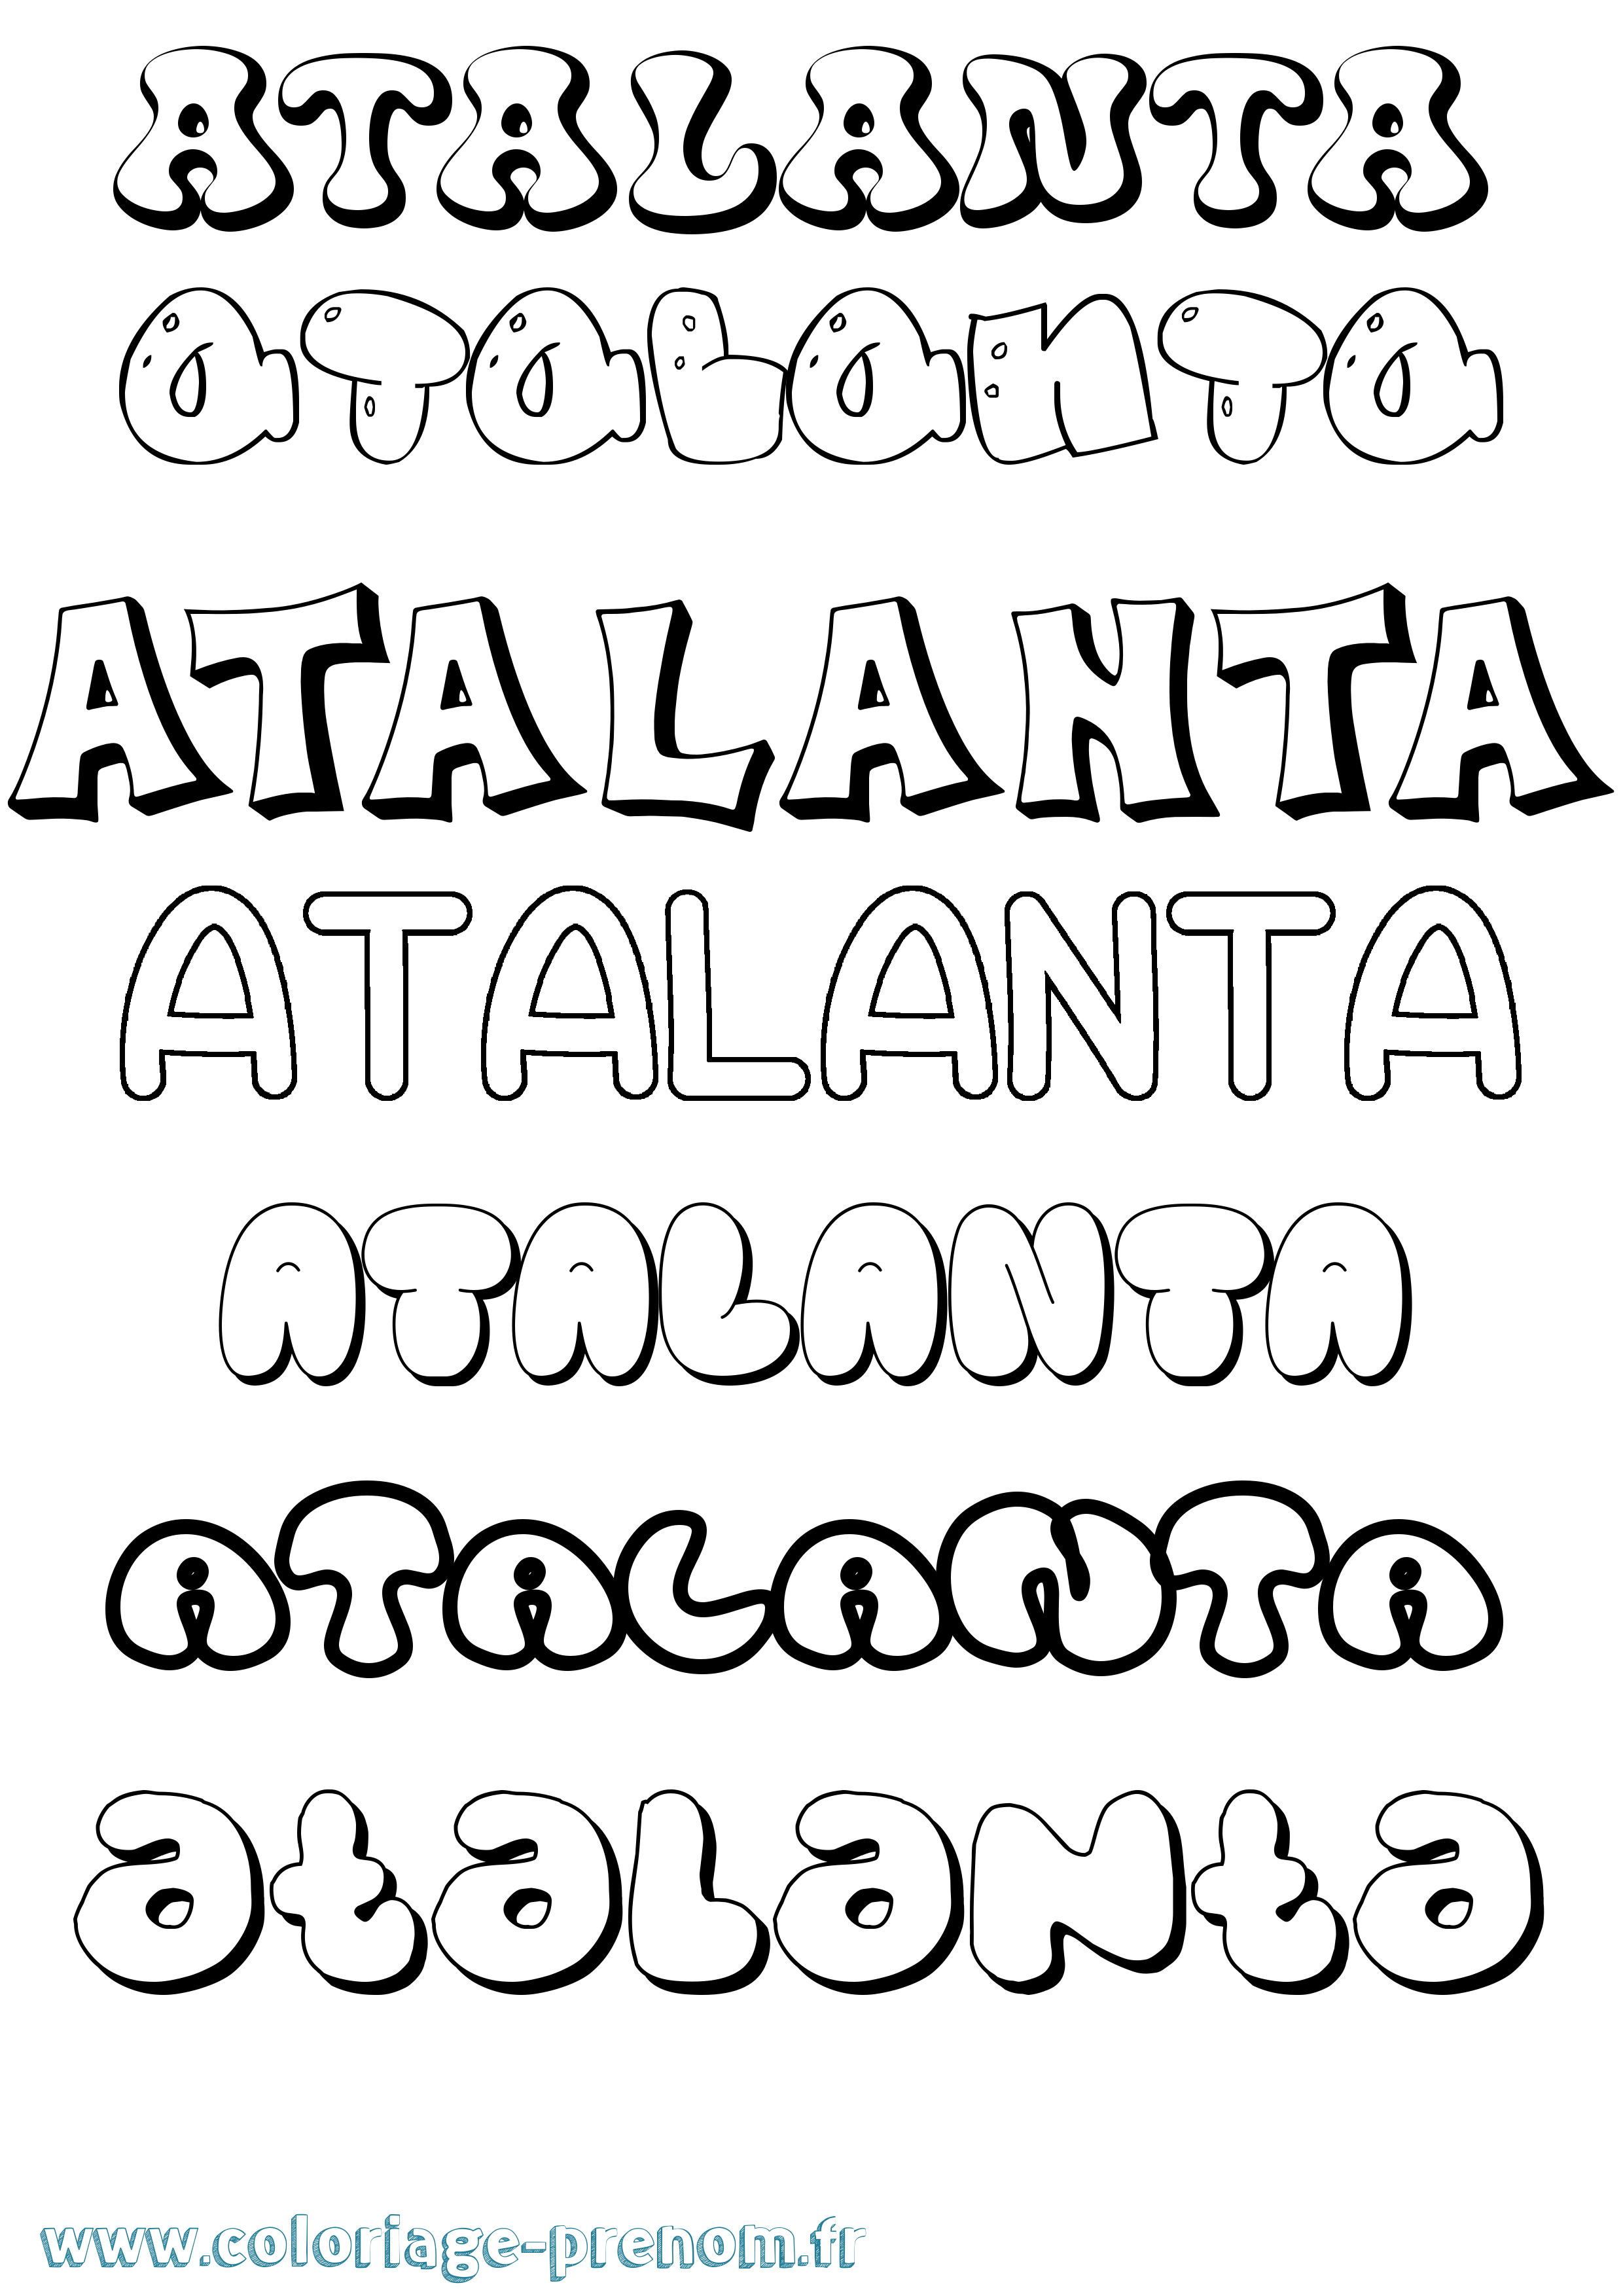 Coloriage prénom Atalanta Bubble